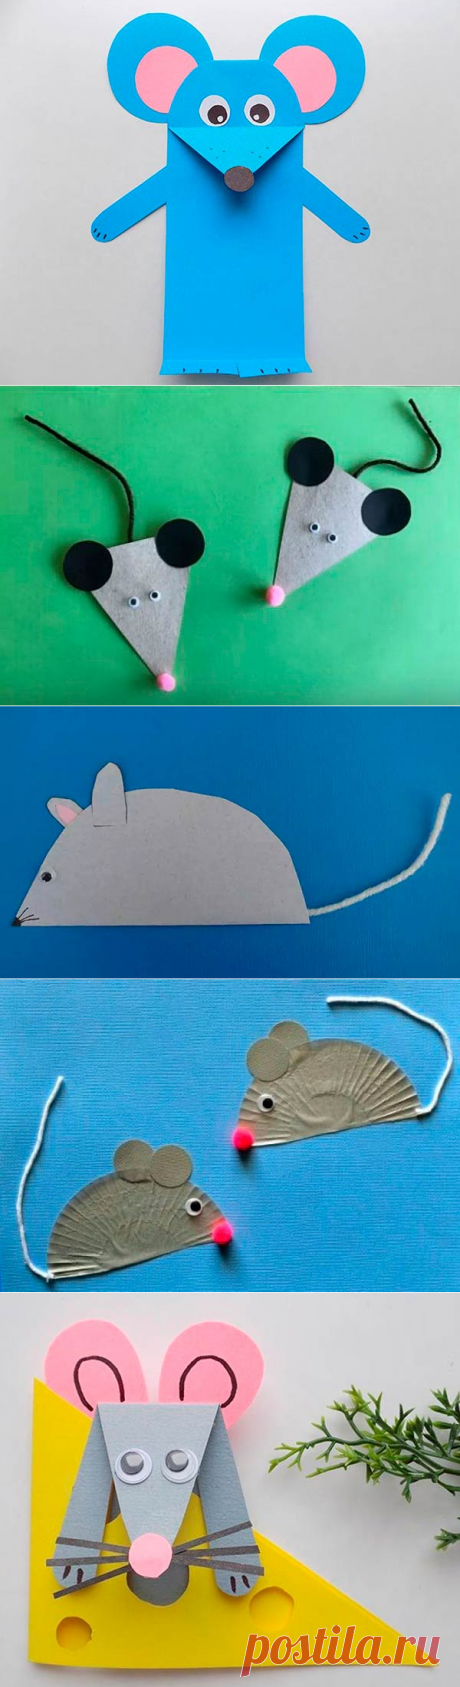 Аппликация мыши: шаблоны для вырезания, мышка из геометрических фигур с мышатами, мышонок из цветной бумаги с сыром для малышей детского сада и школы